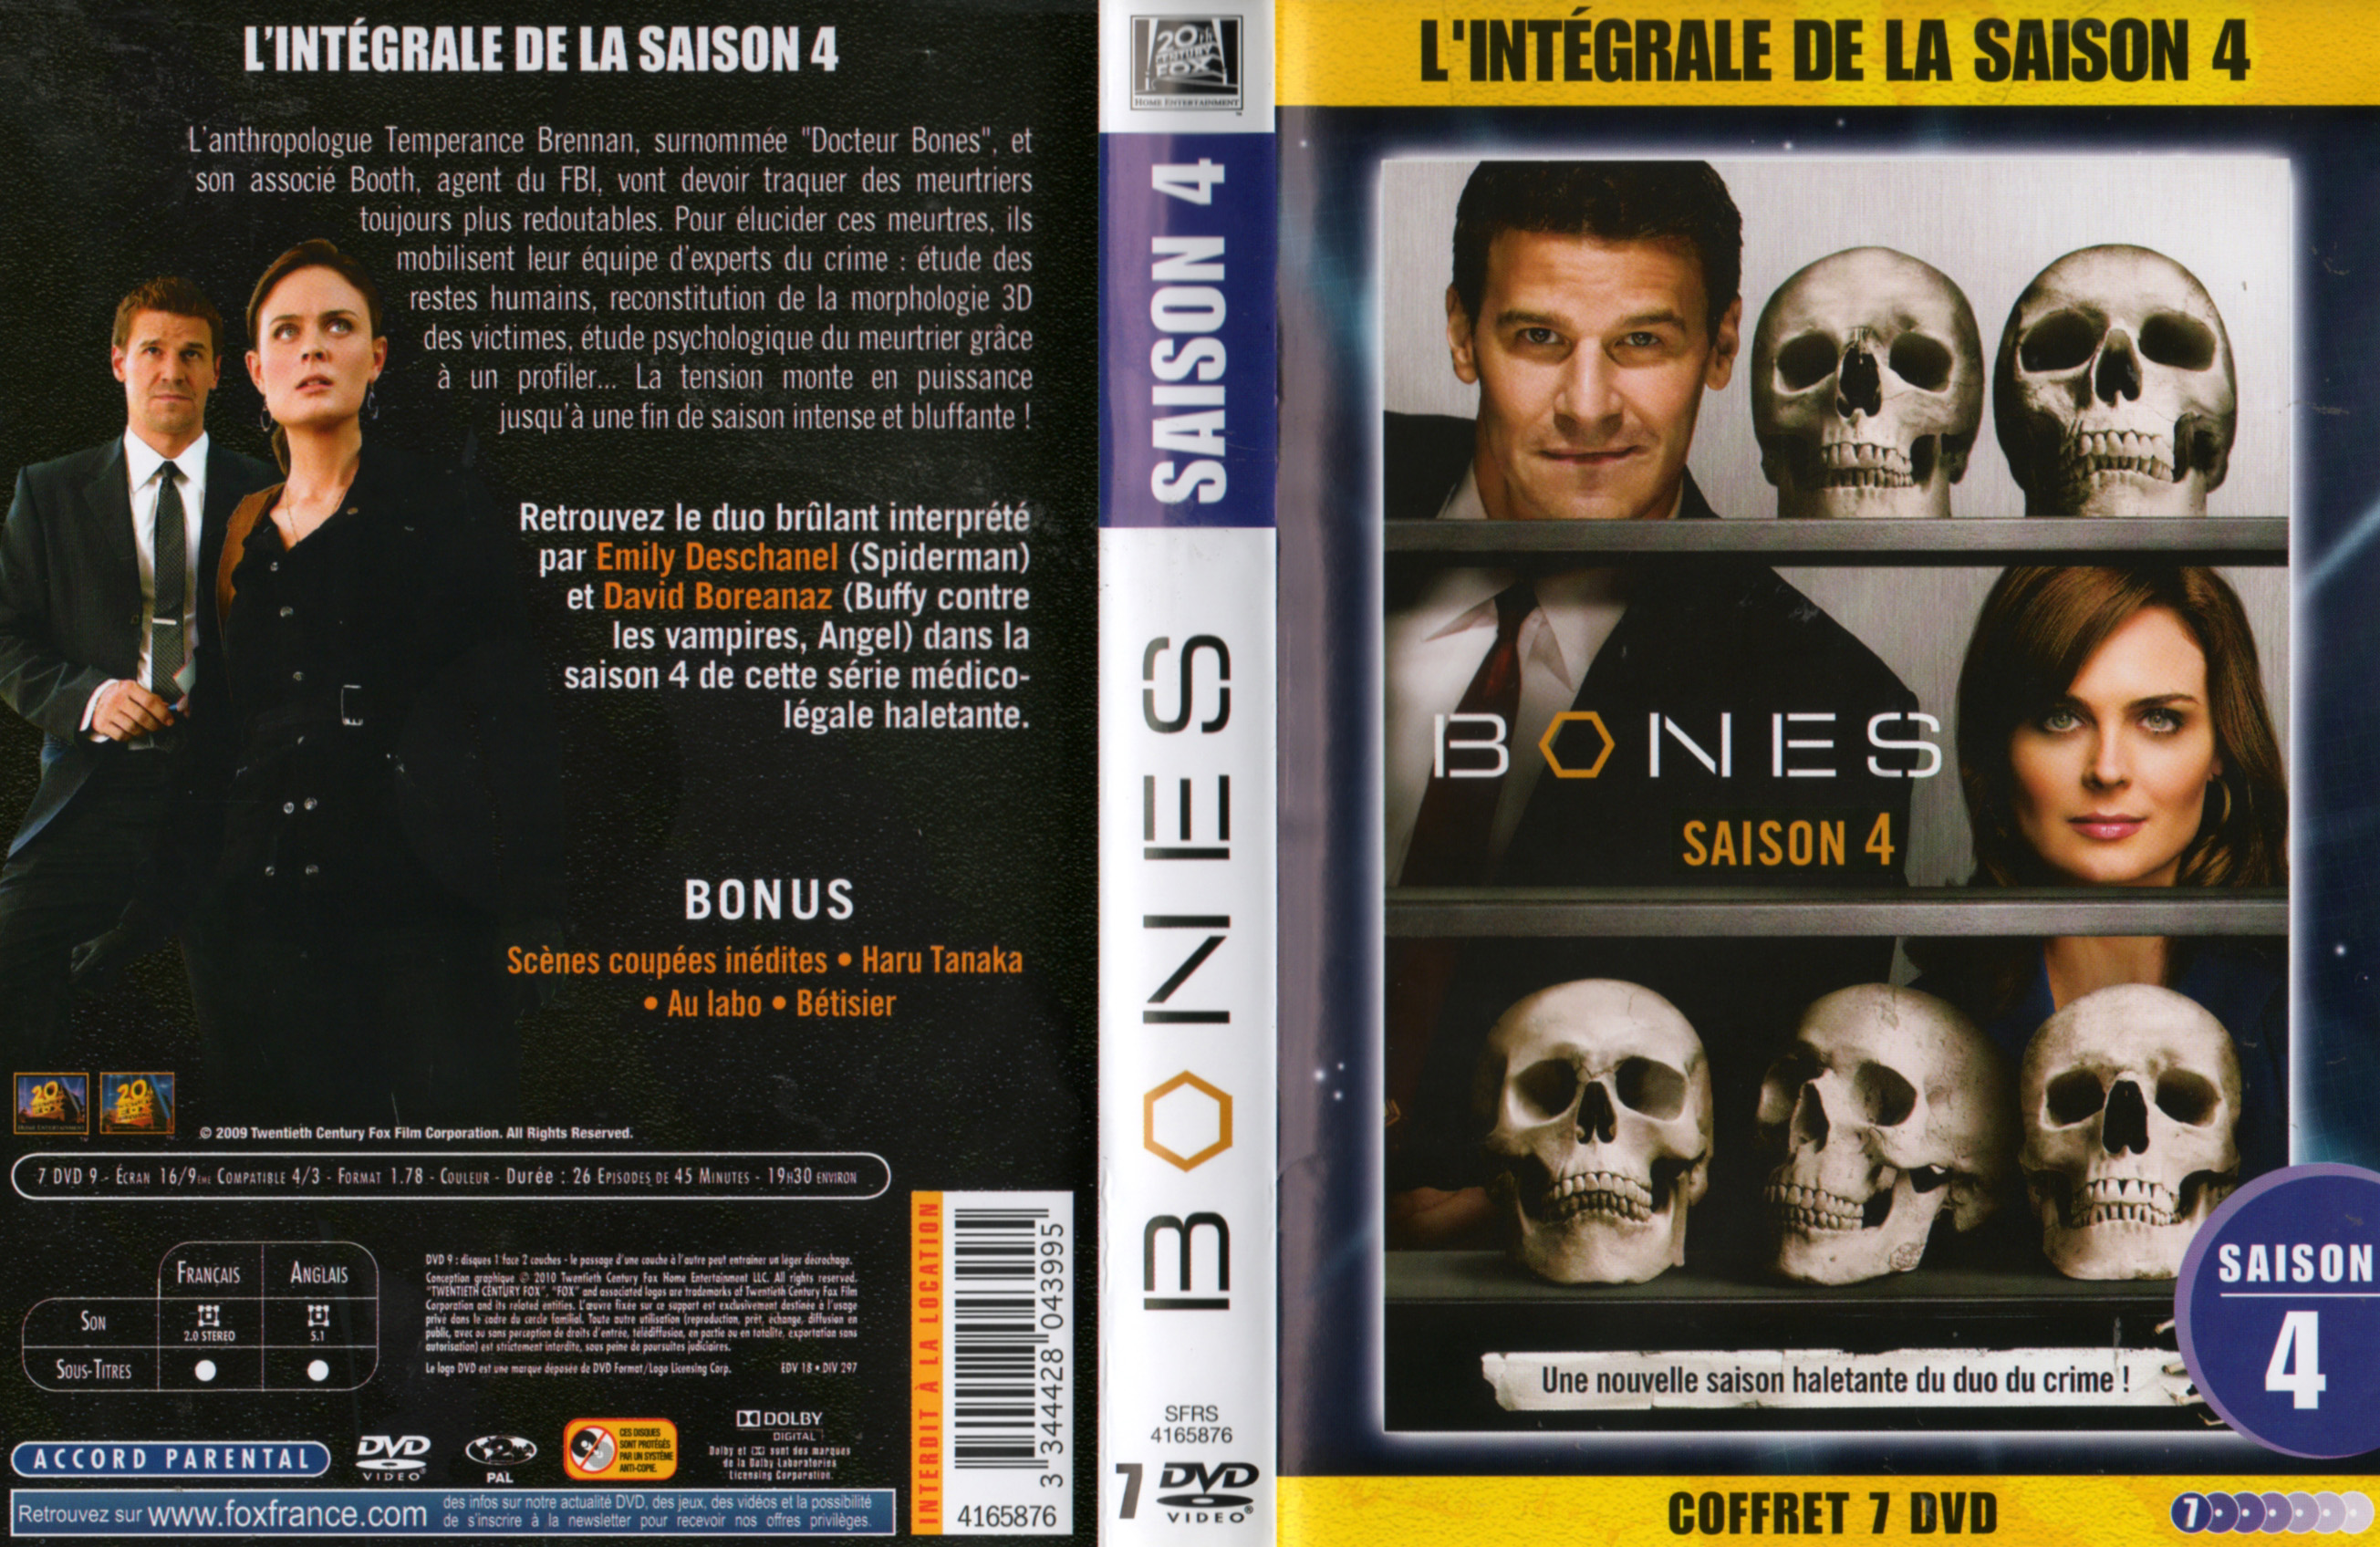 Jaquette DVD Bones Saison 4 COFFRET v2